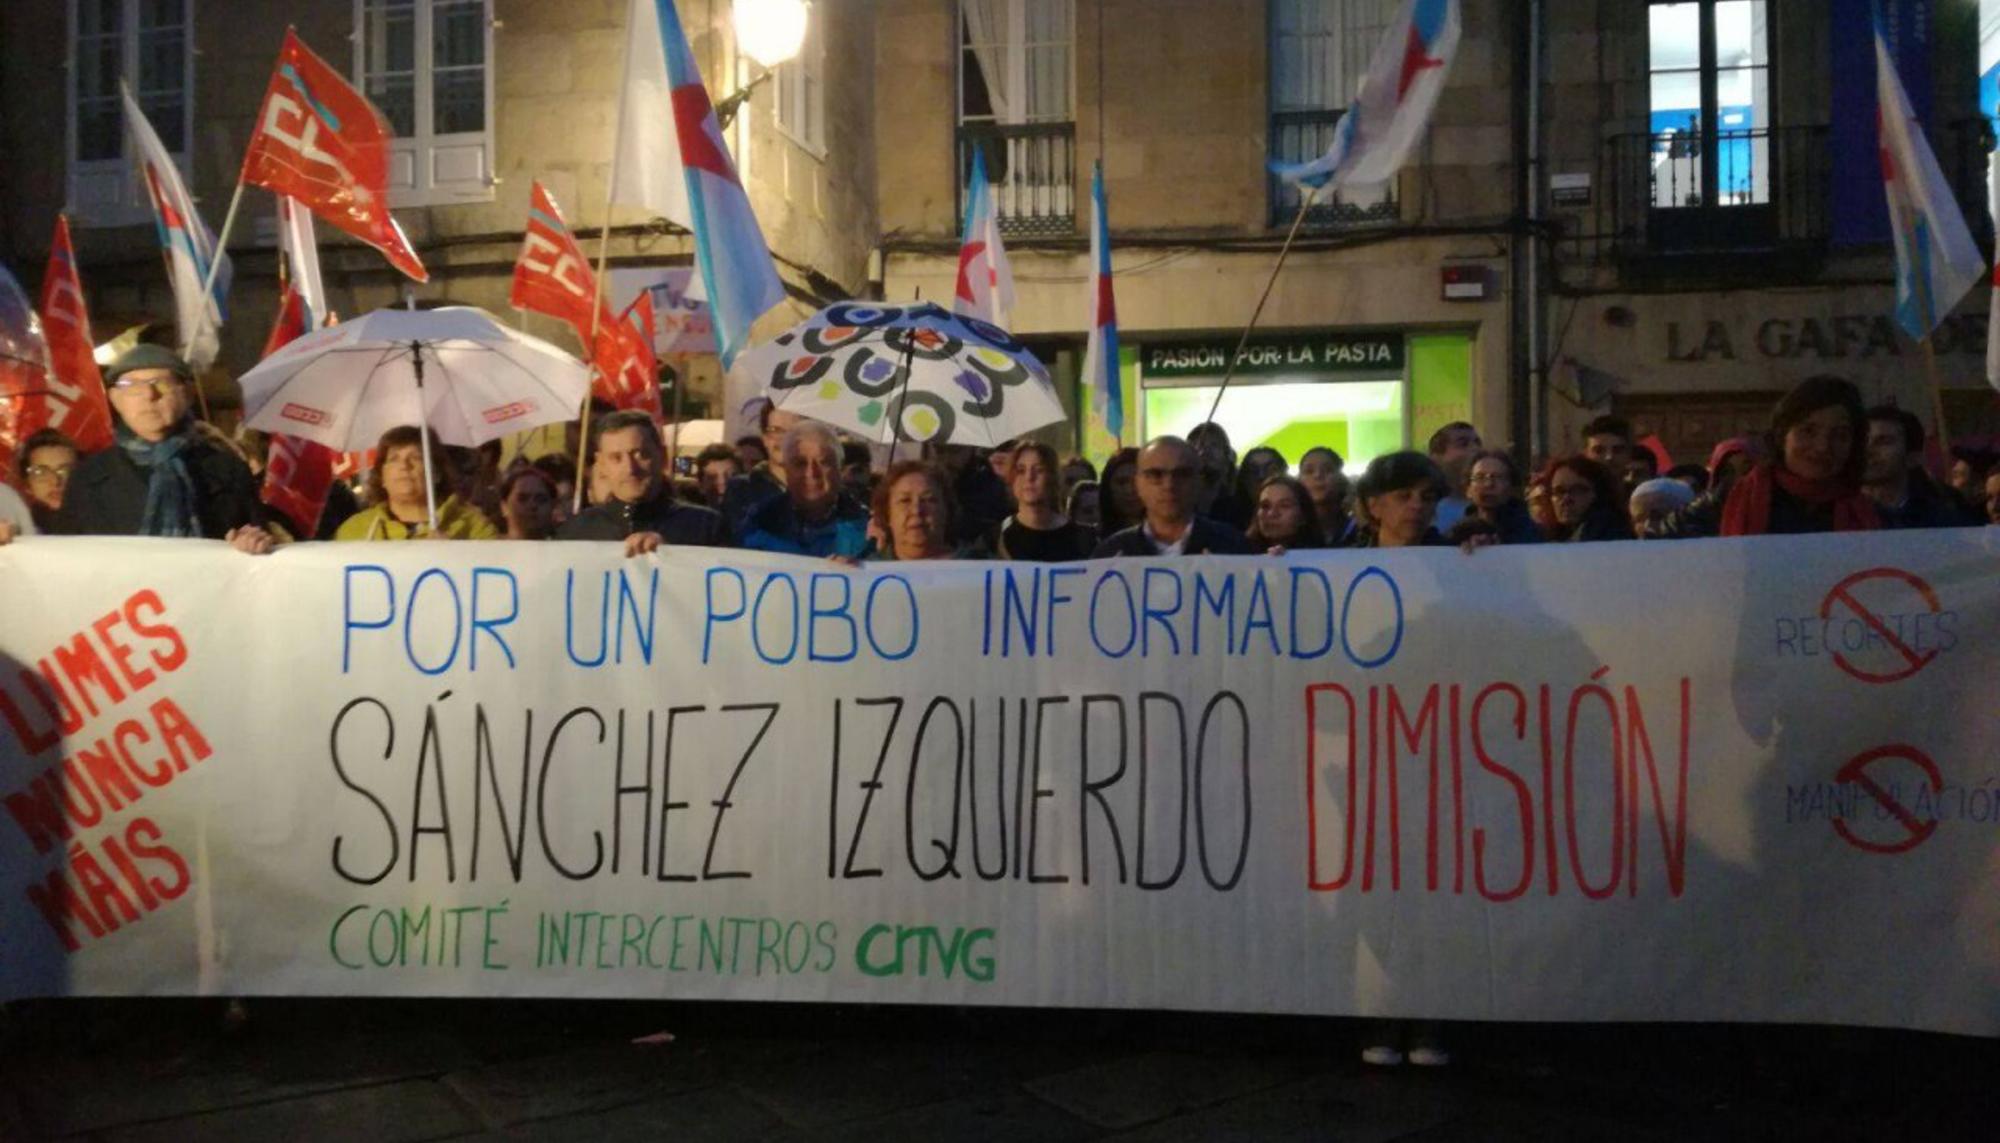 TVG mobilización Sanchez Izquierdo dimisión